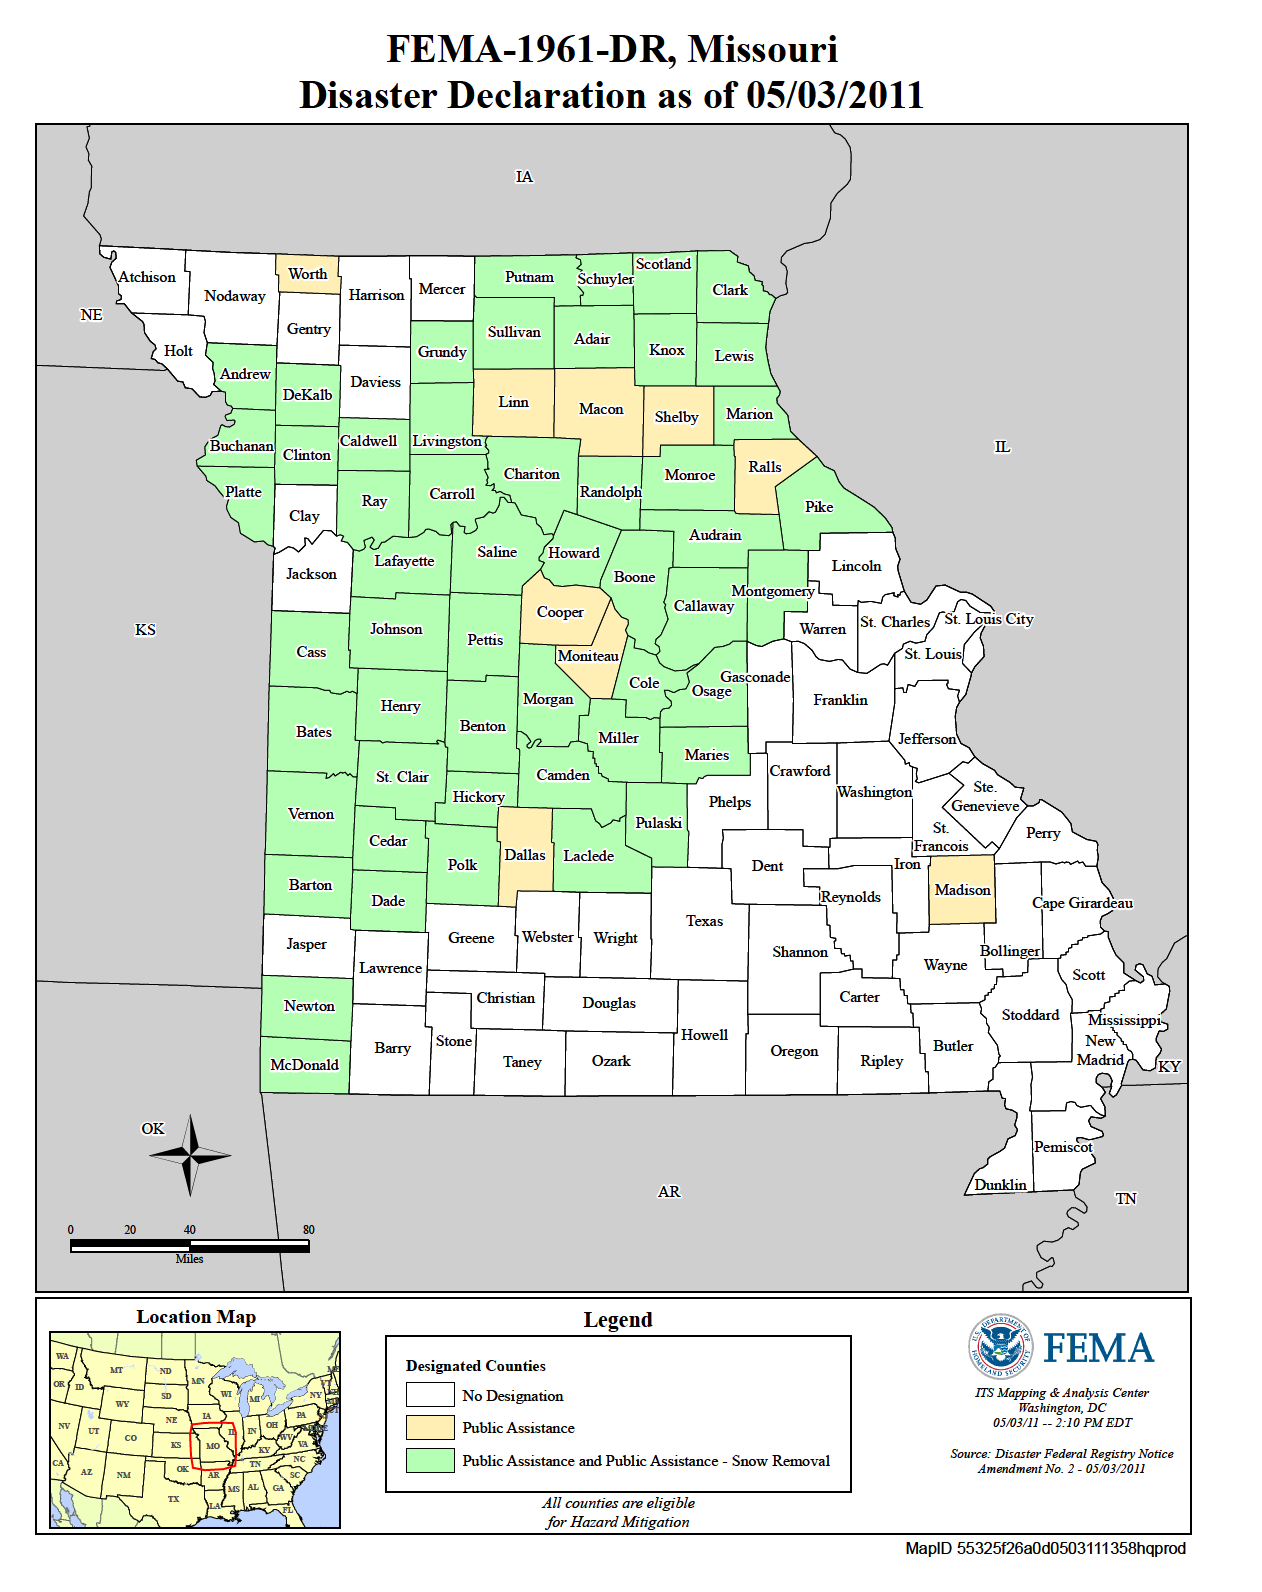 Missouri Severe Winter Storm And Snowstorm (DR-1961-MO) | FEMA.gov